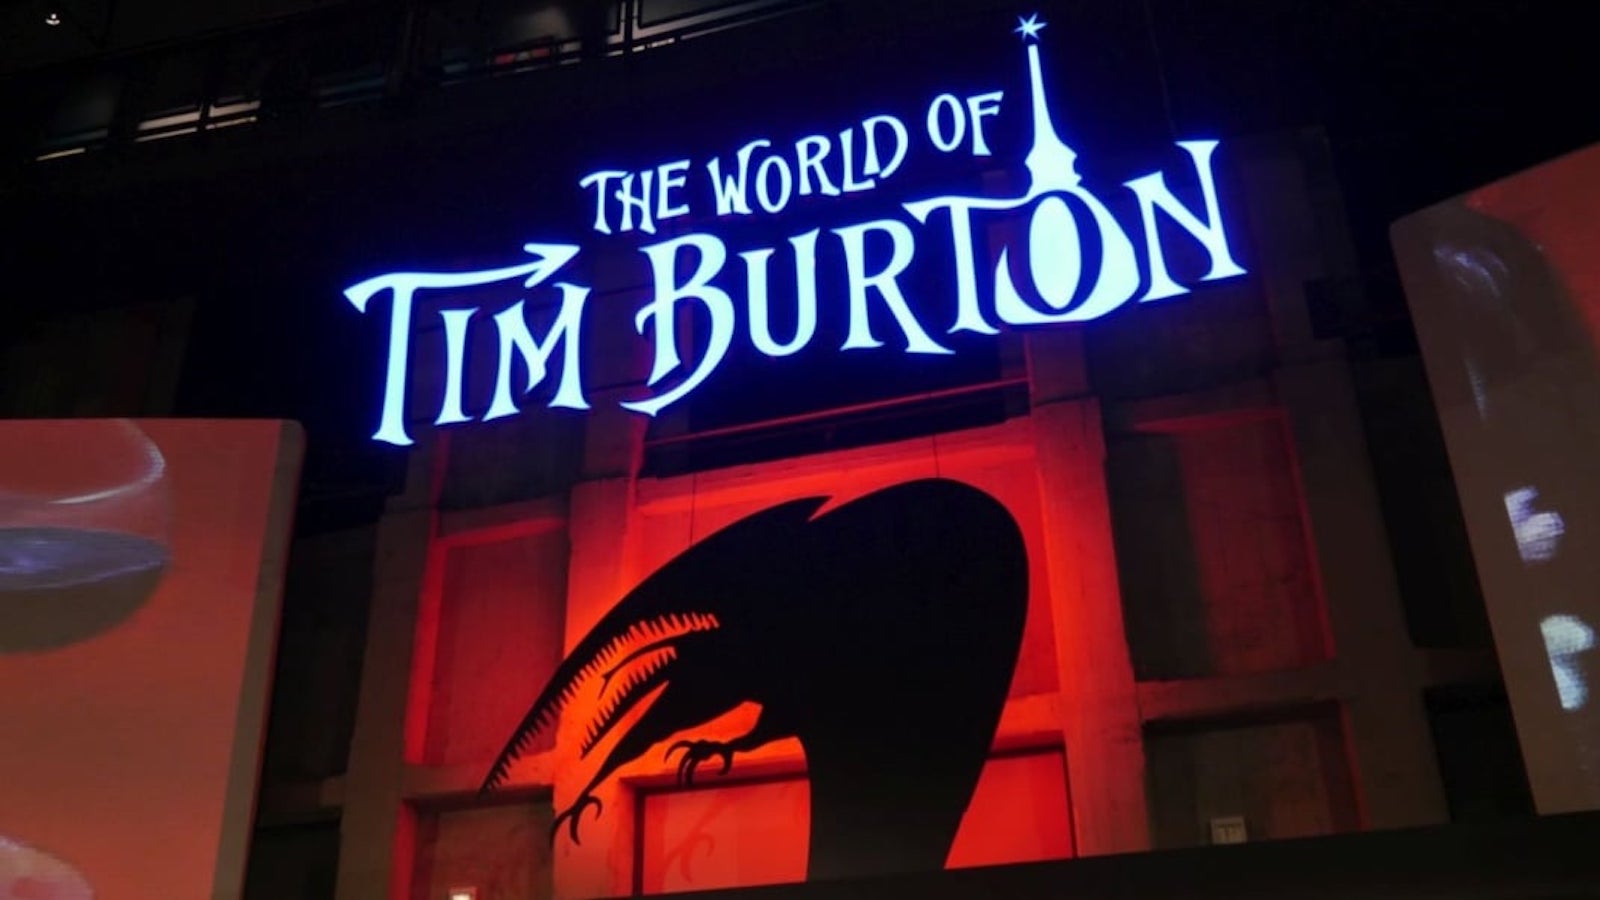 Il mondo di Tim Burton: tutto quello che c'è da sapere sulla mostra alla Mole Antonelliana